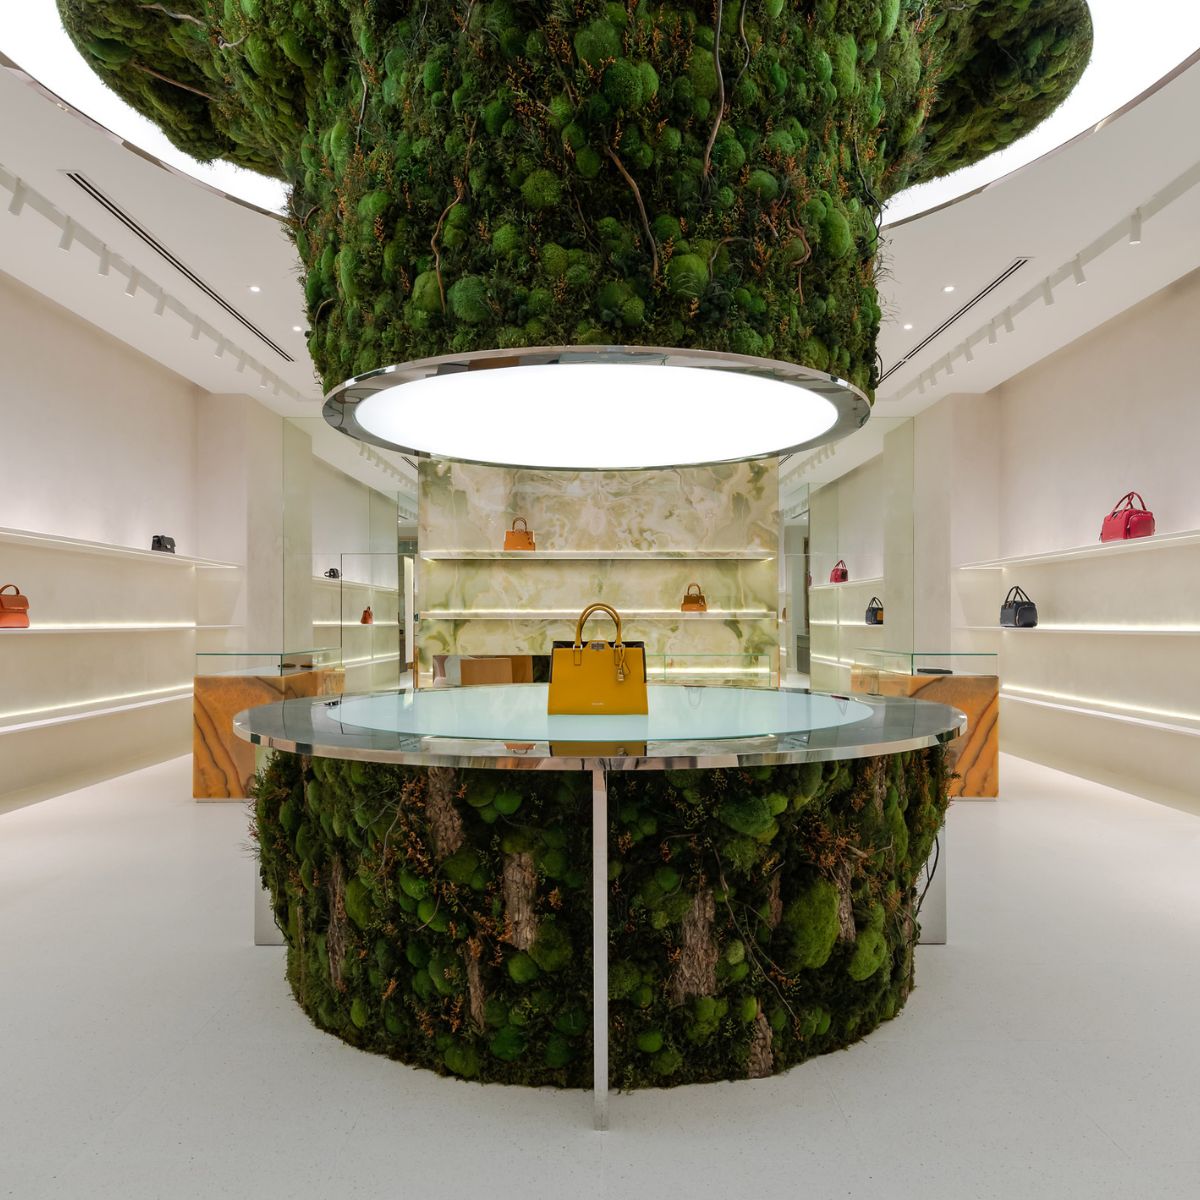 Biophilic design in interior of luxury store featured